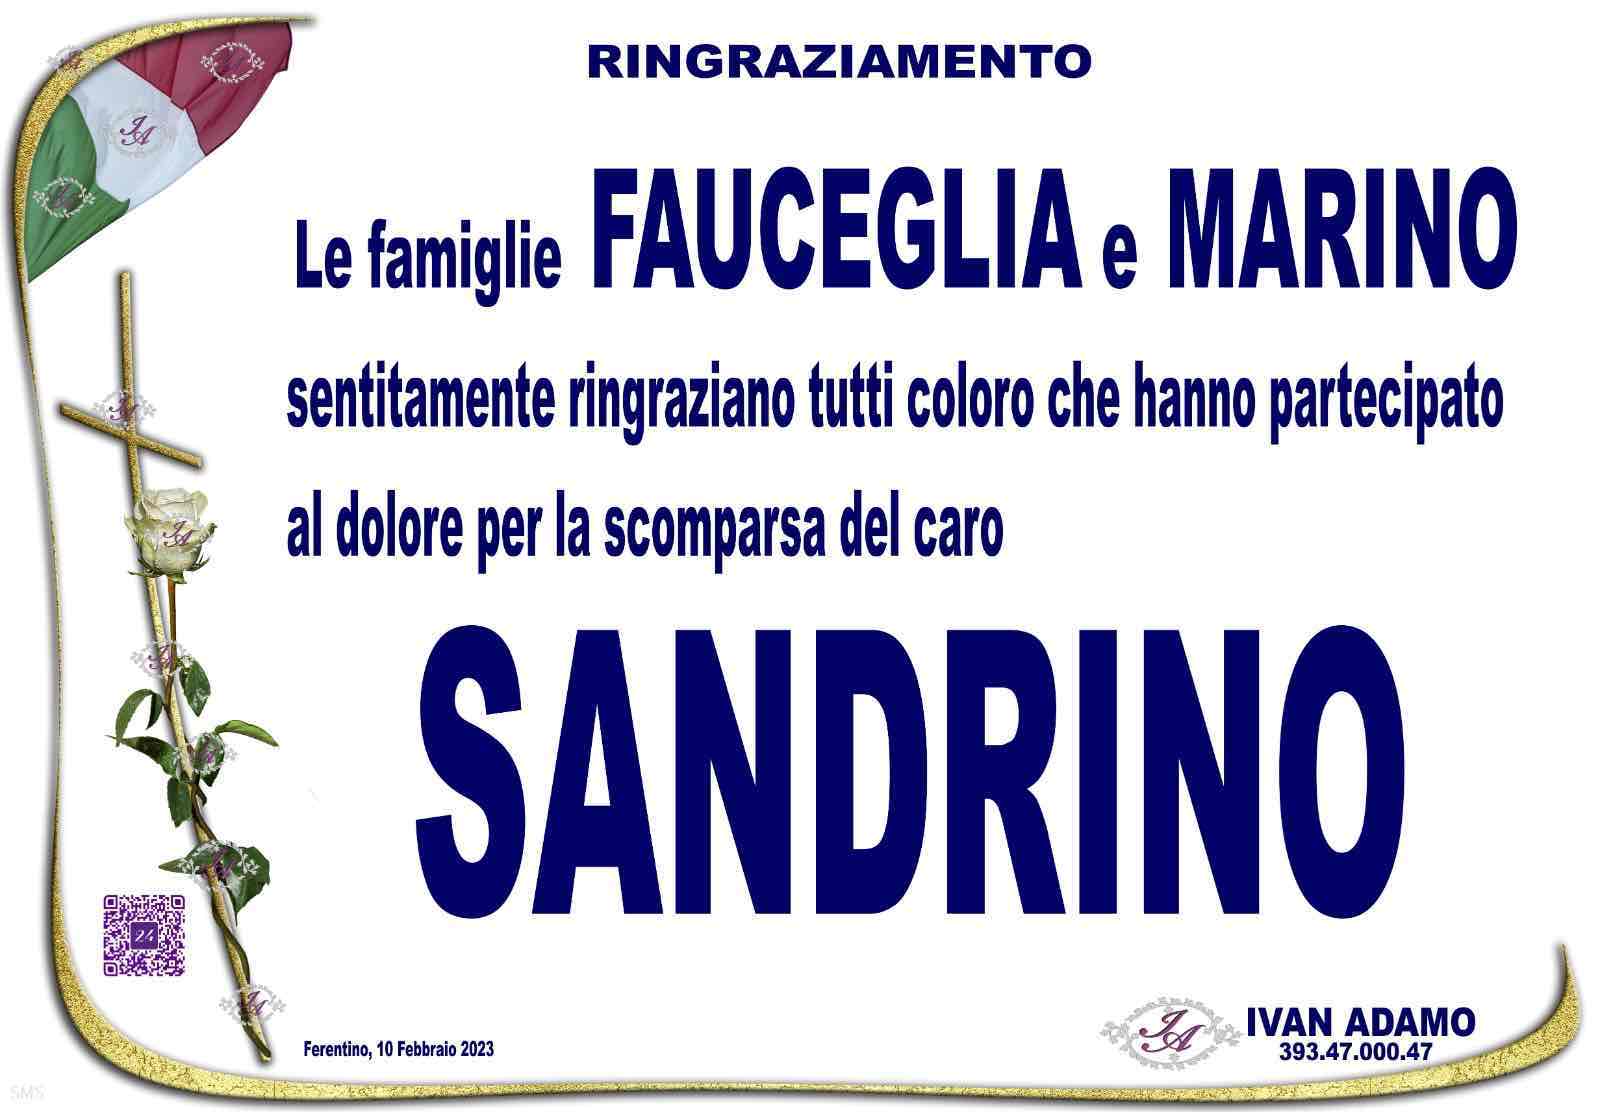 Sandrino Fauceglia